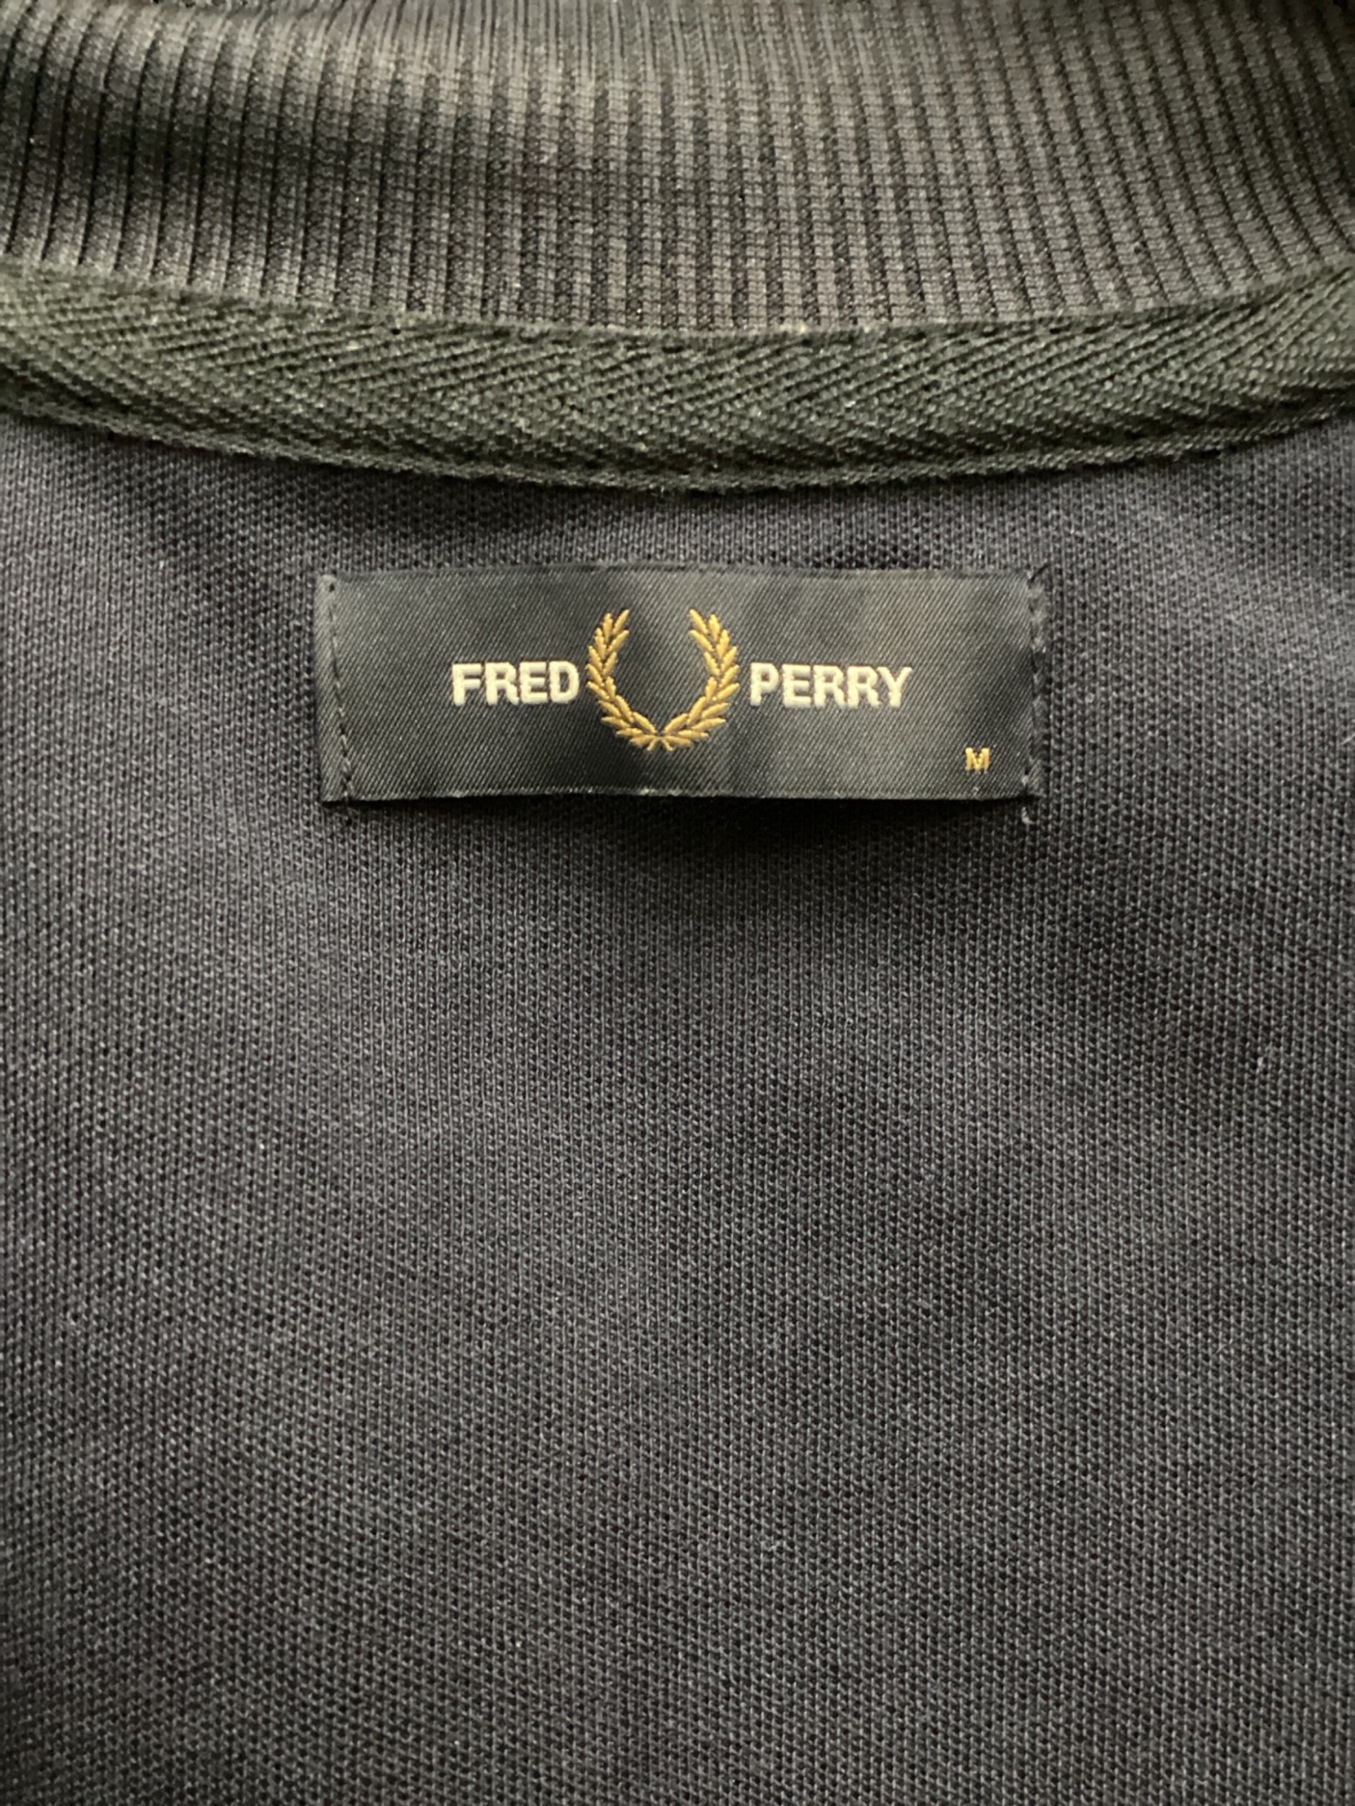 FRED PERRY (フレッドペリー) トラックジャケット ネイビー サイズ:M